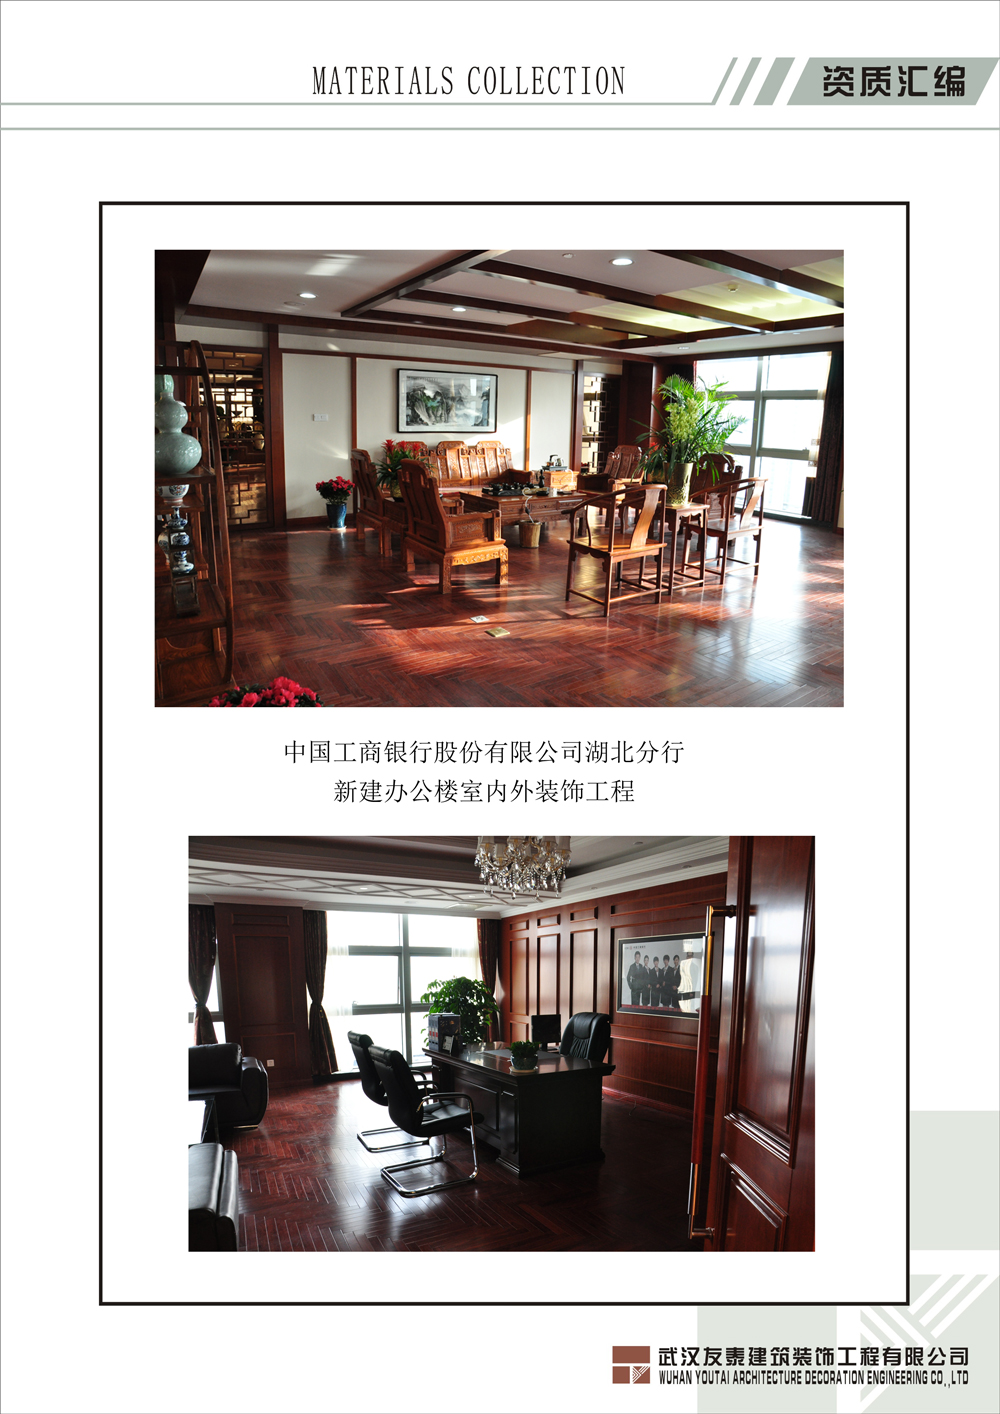 中國工商銀行股份有限公司湖北分行新建辦公樓室內外裝飾工程